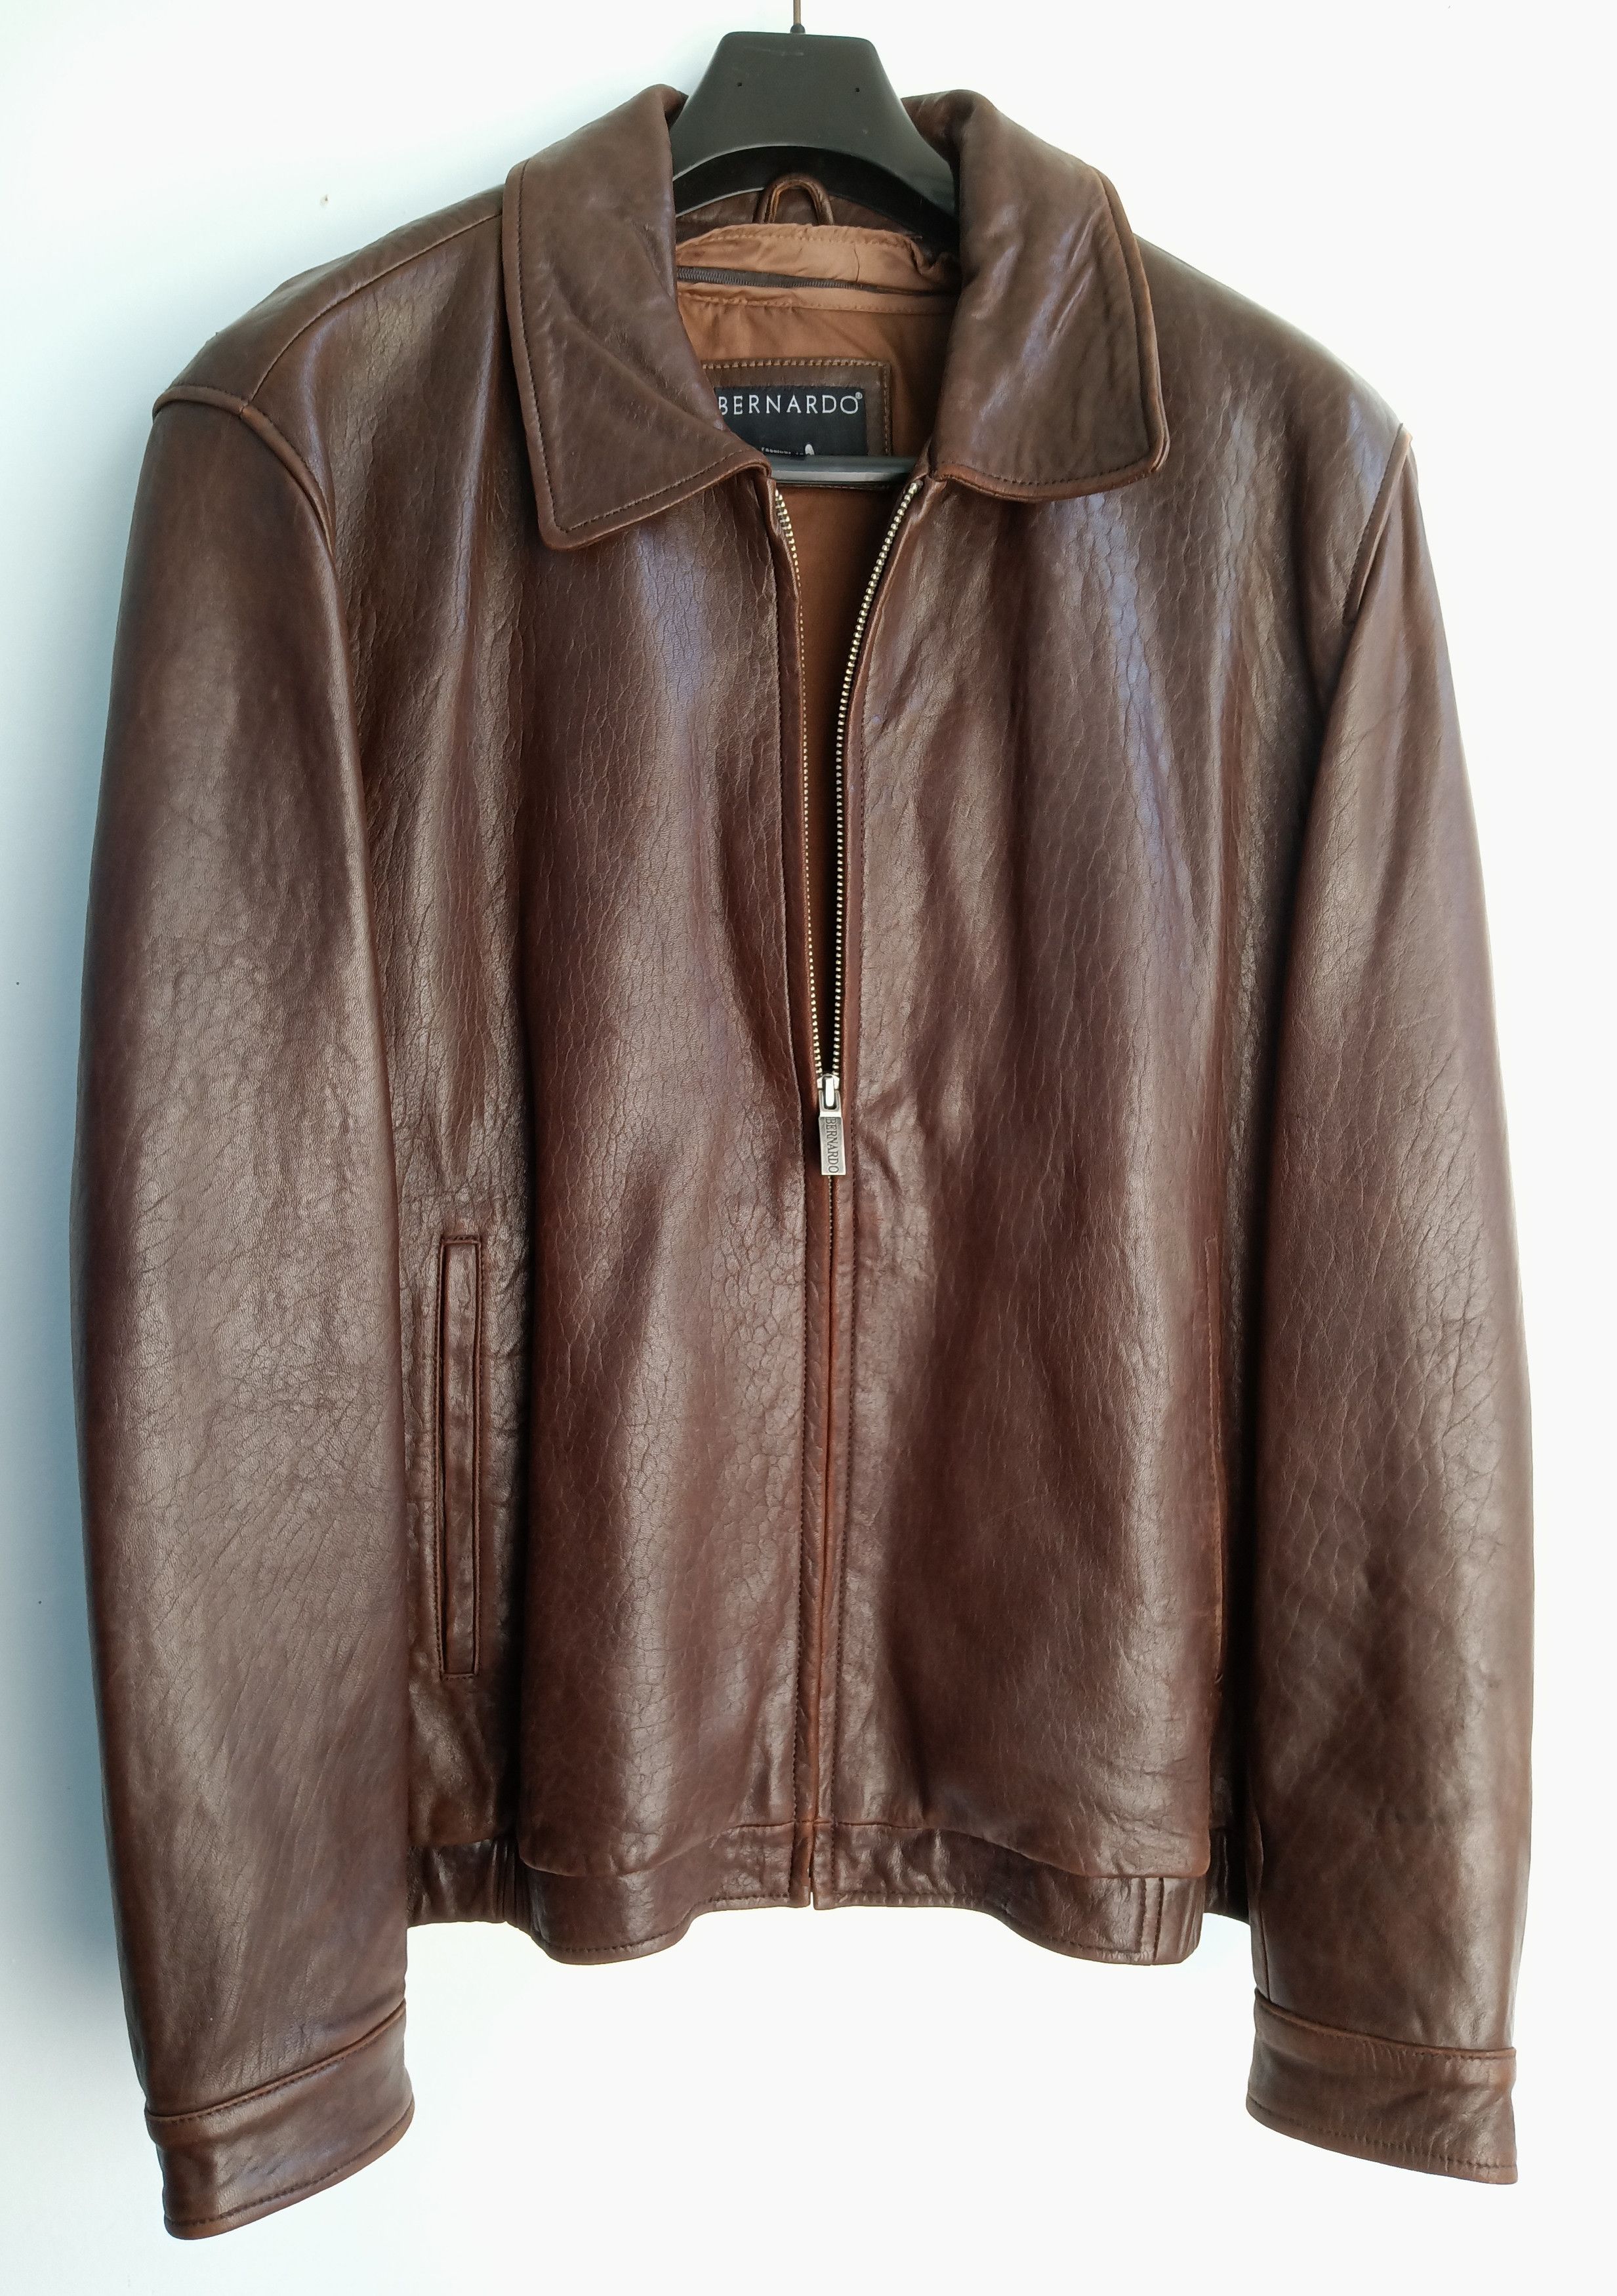 Vintage Vintage Bernardo Distressed Leather Bomber Jacket. Size US XL / EU 56 / 4 - 4 Thumbnail